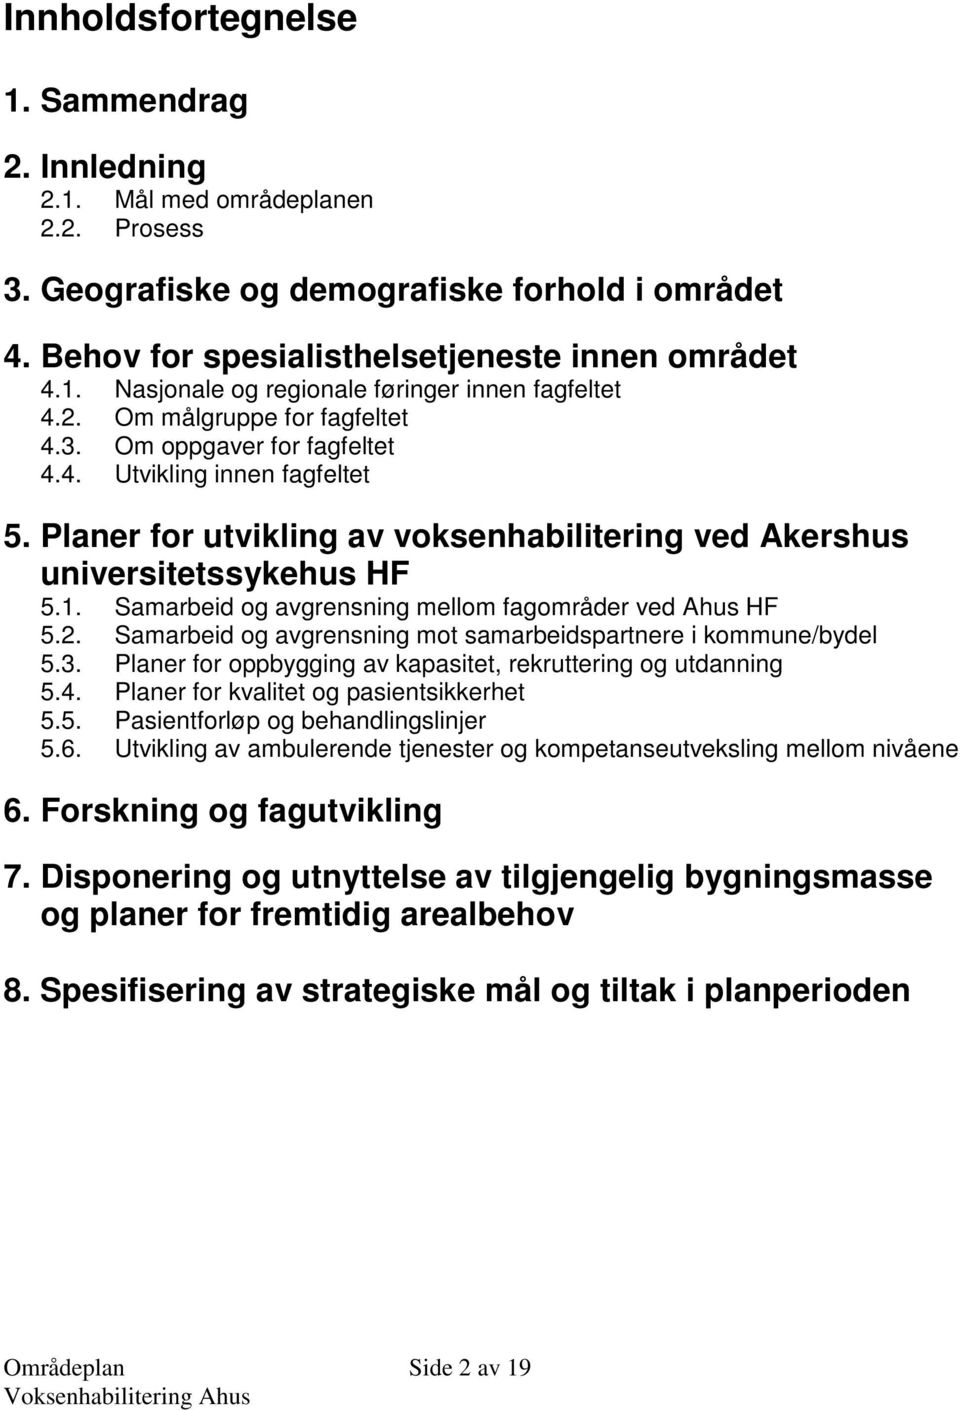 Samarbeid og avgrensning mellom fagområder ved Ahus HF 5.2. Samarbeid og avgrensning mot samarbeidspartnere i kommune/bydel 5.3. Planer for oppbygging av kapasitet, rekruttering og utdanning 5.4.